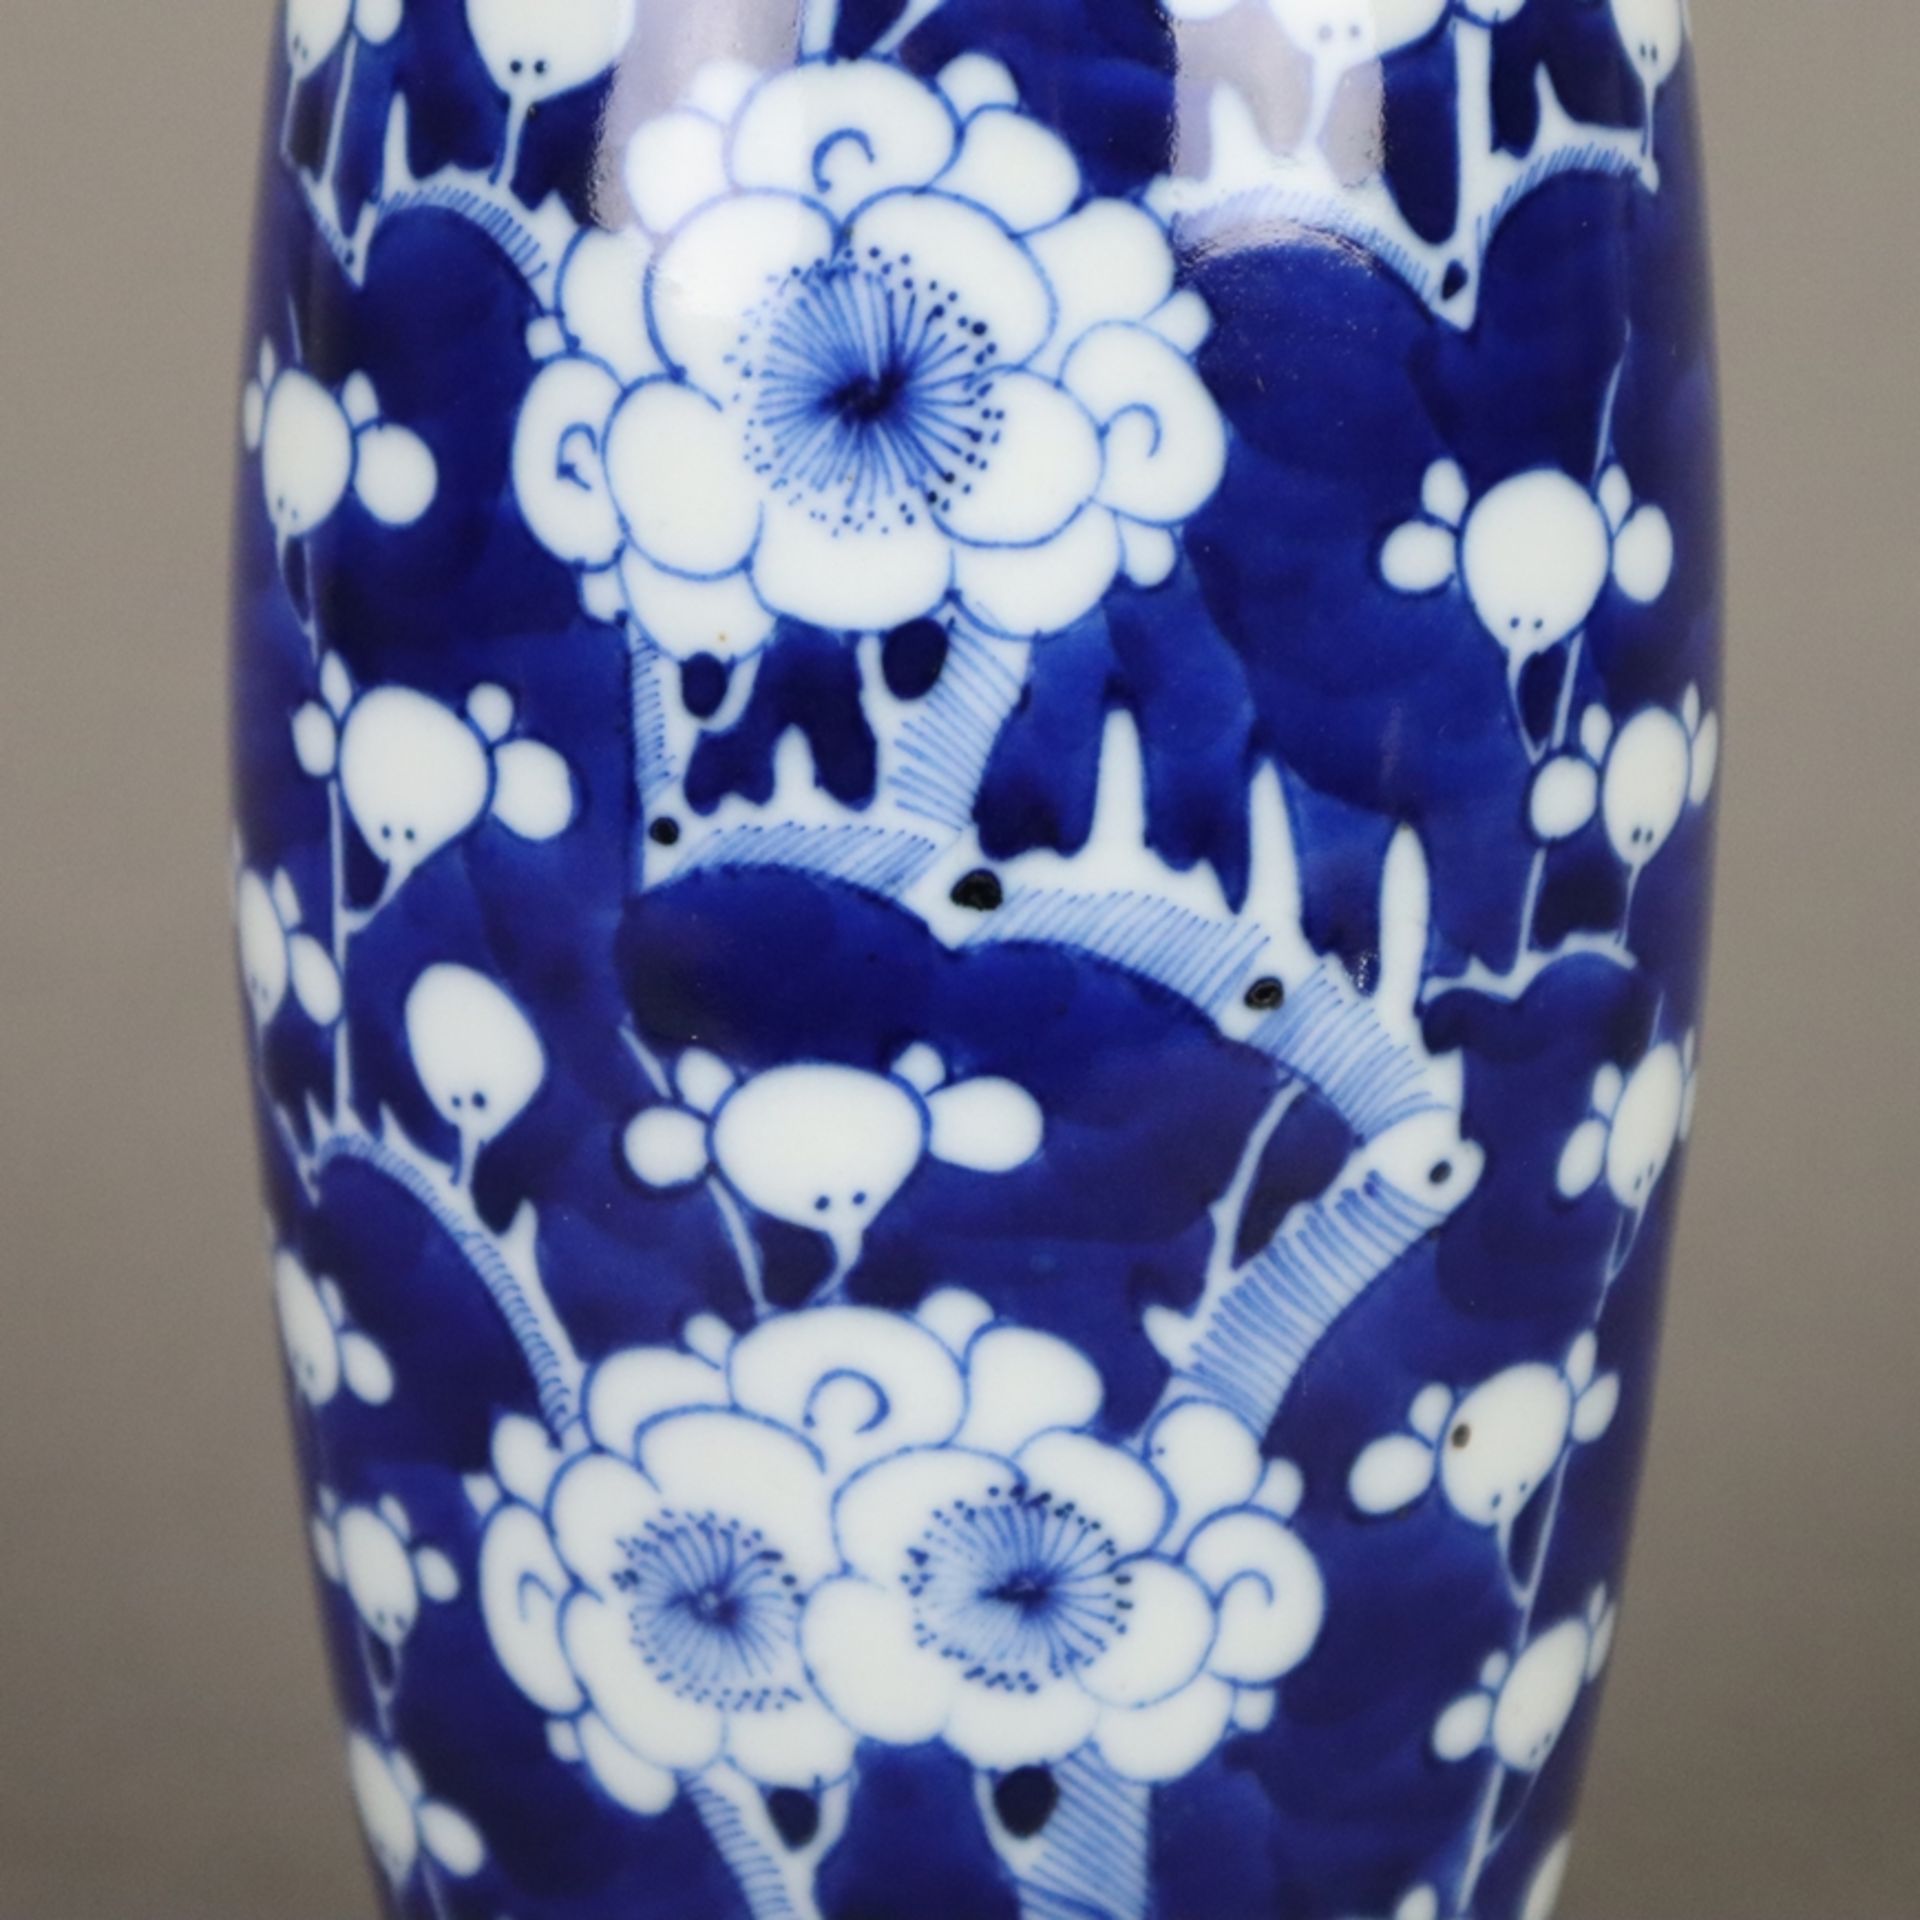 Vase mit Blütendekor - China, 20. Jh., Porzellan, Weiß-blau-Malerei mit Pflaume - Bild 6 aus 9